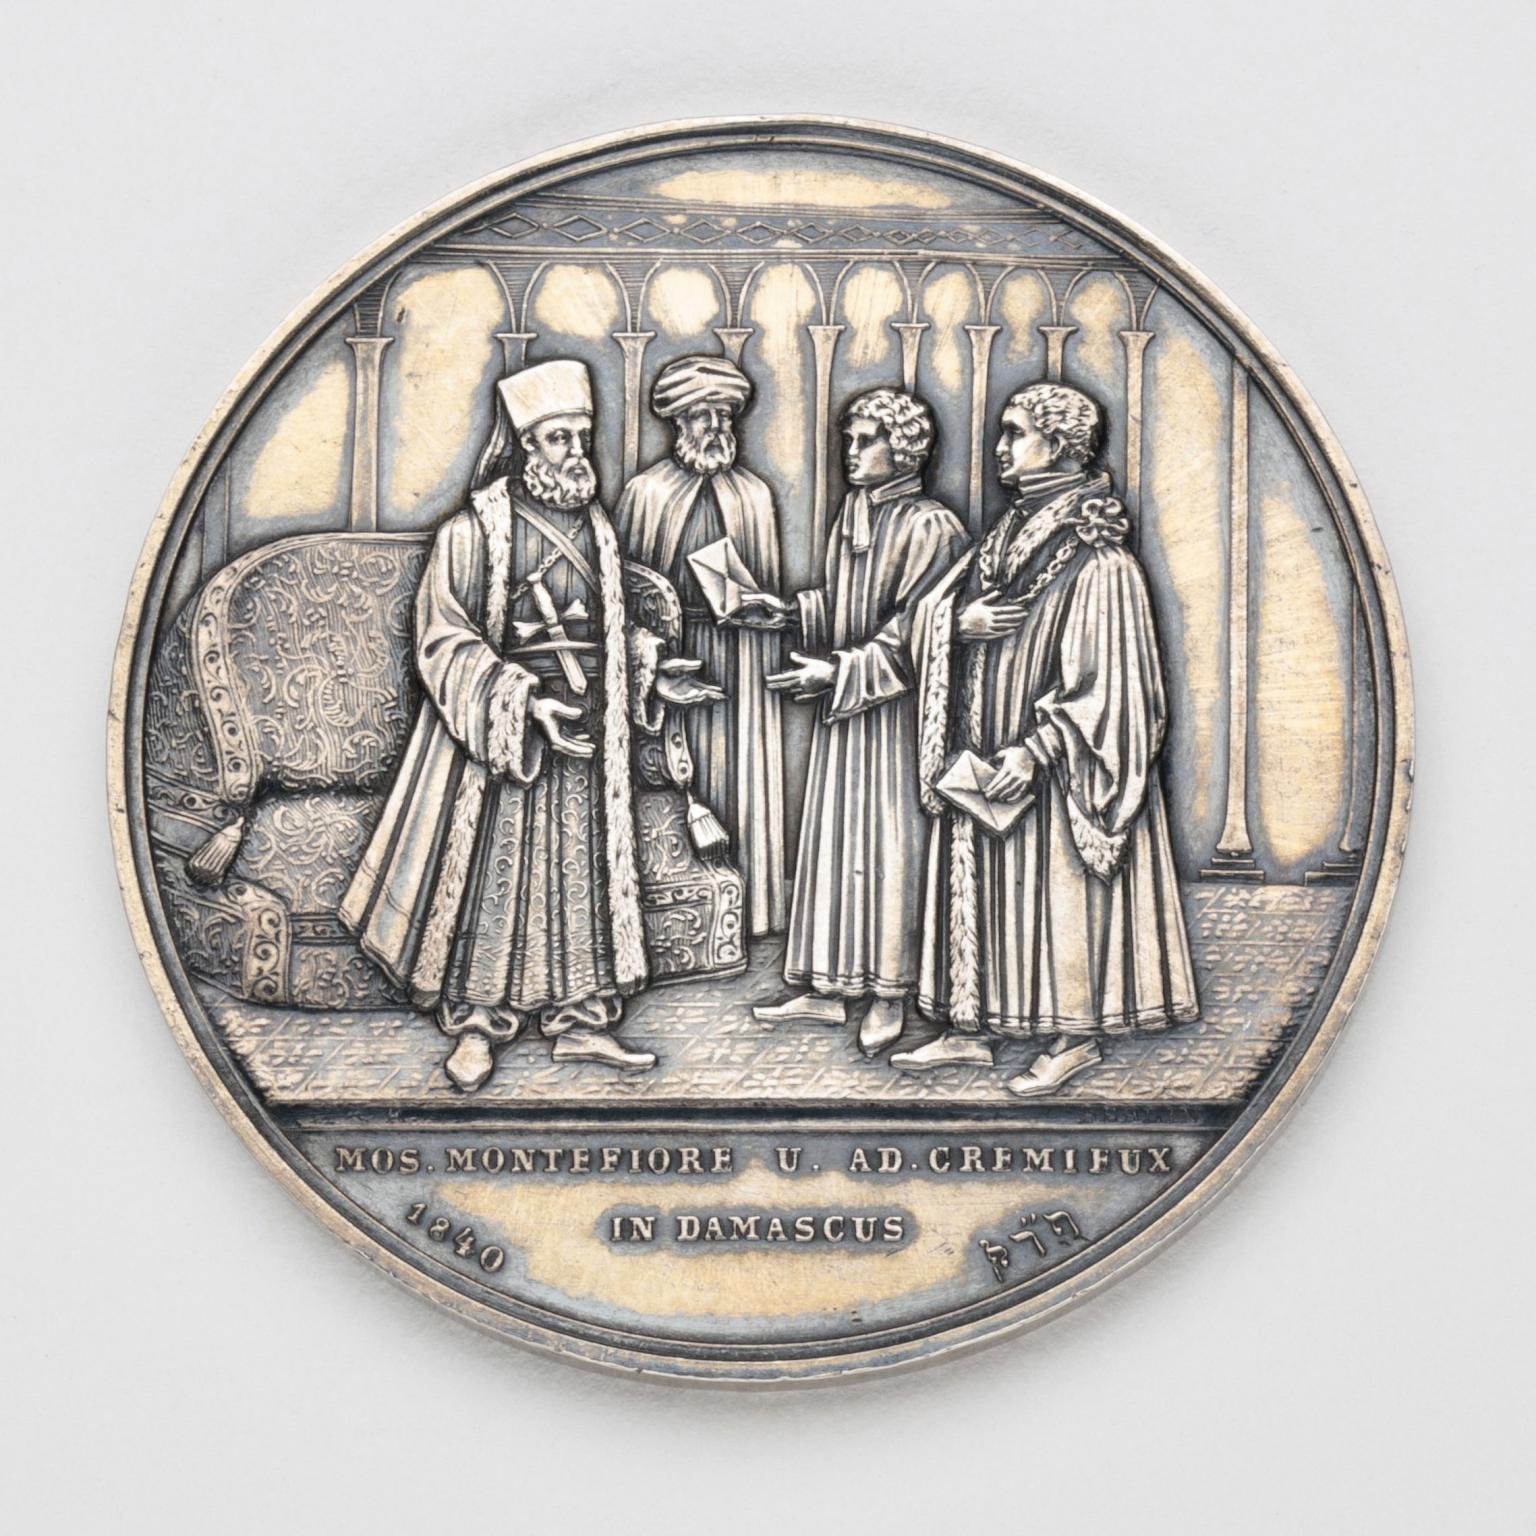 Silver medal depicting four men talking.